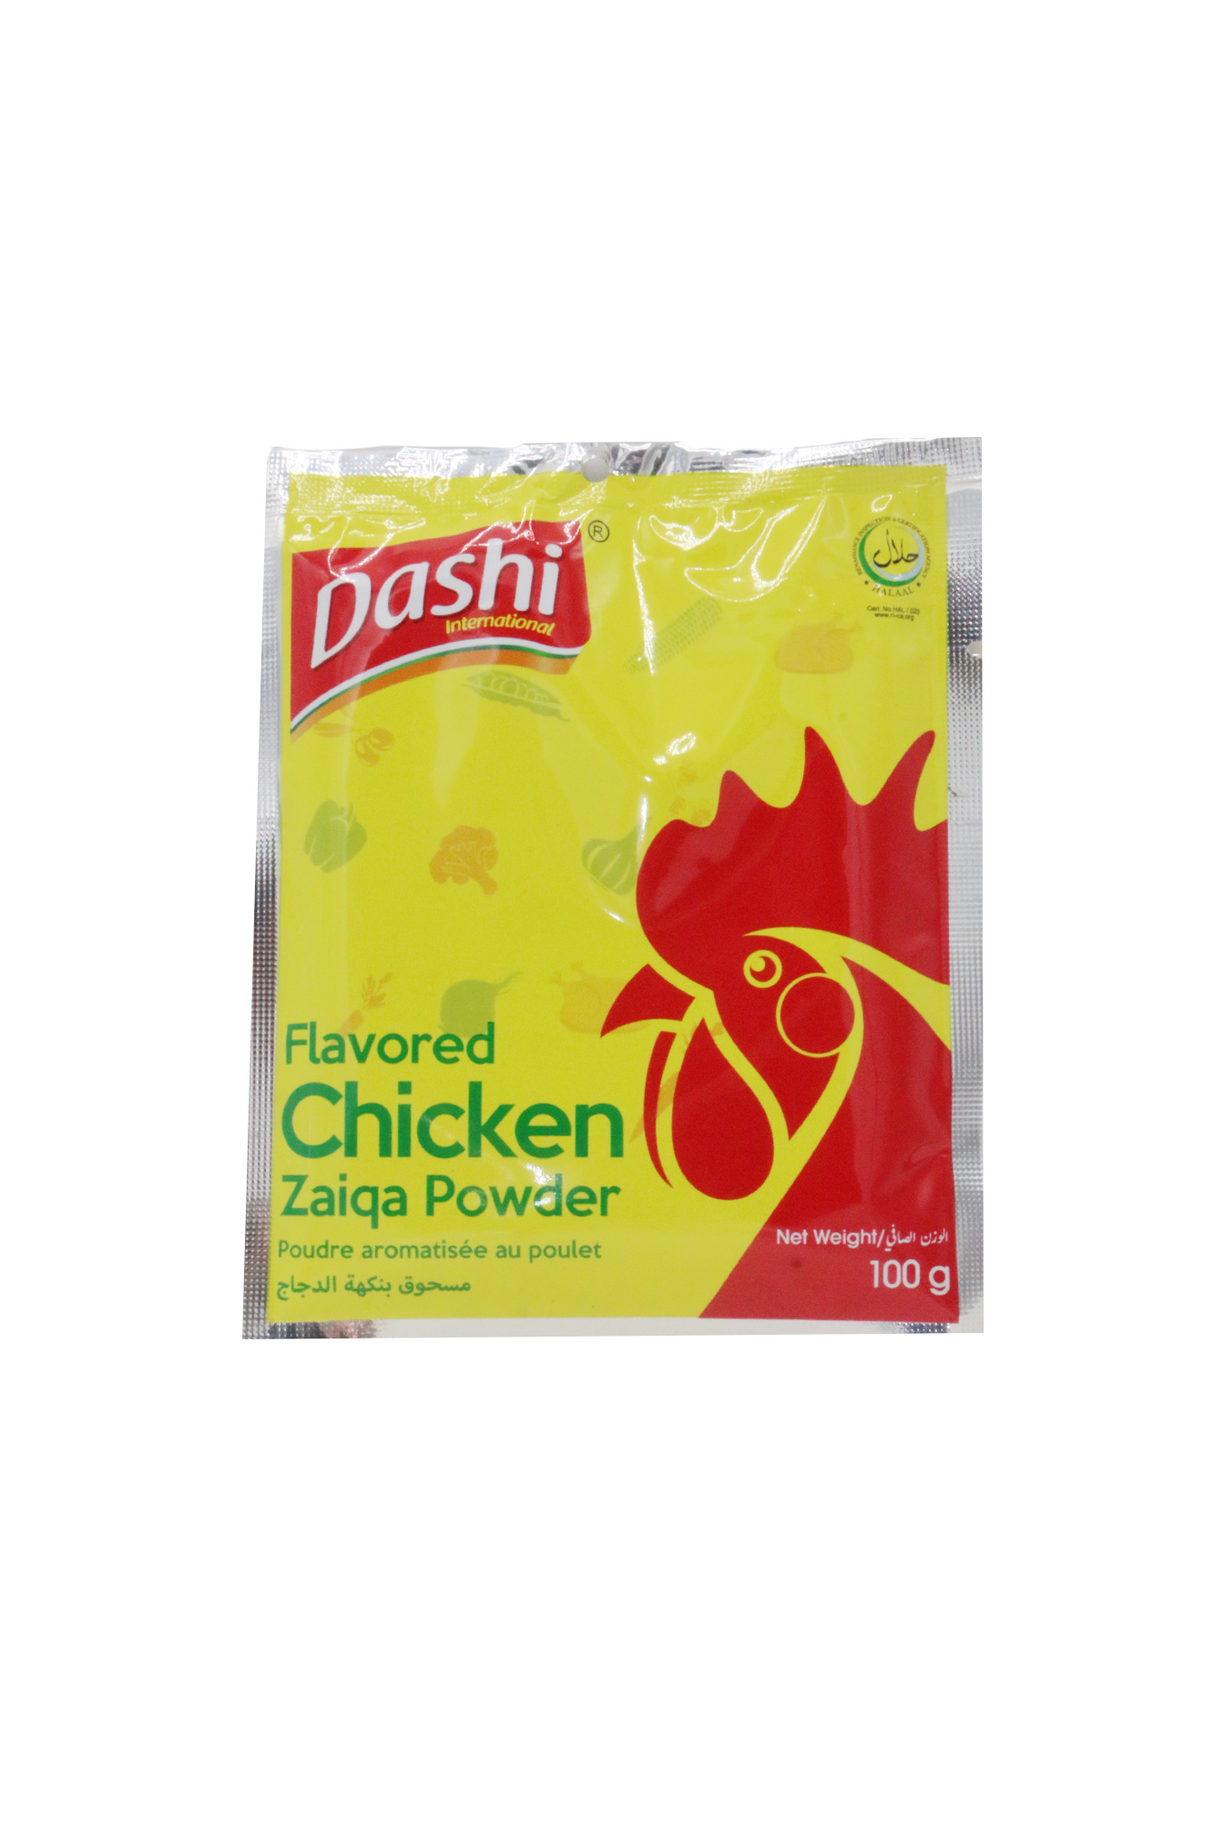 dashi chicken powder zaiqa 100g